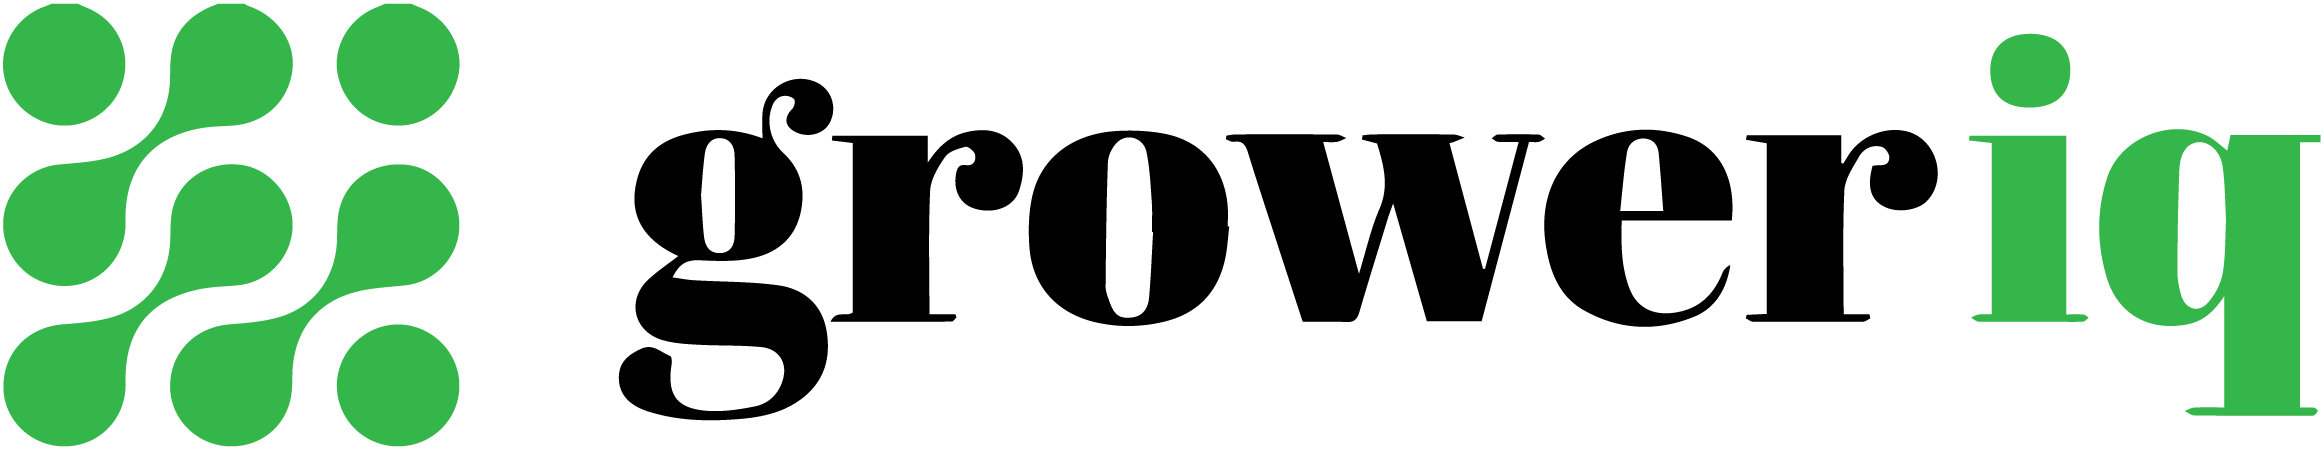 Groweriq Logo